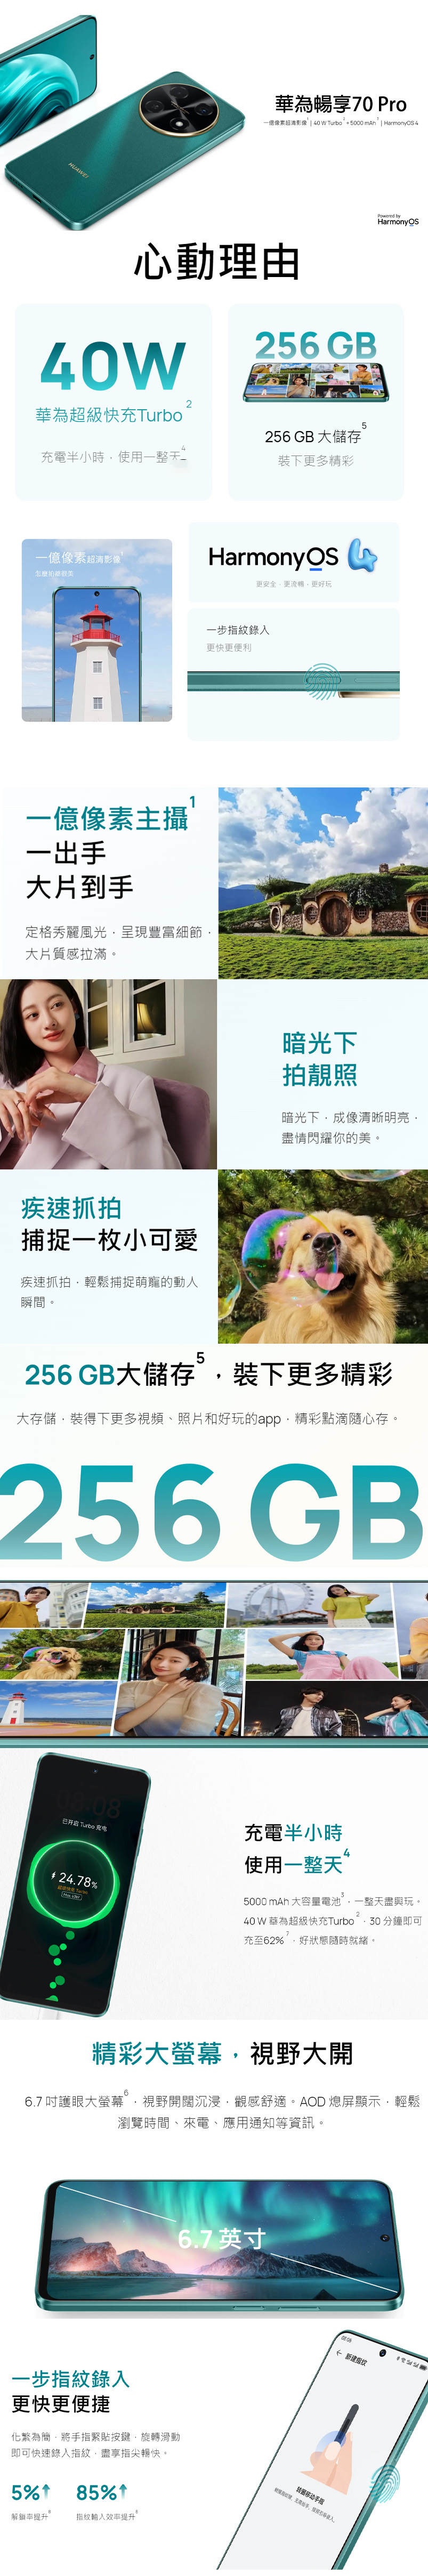 Huawei Enjoy 70 pro 4G LTE